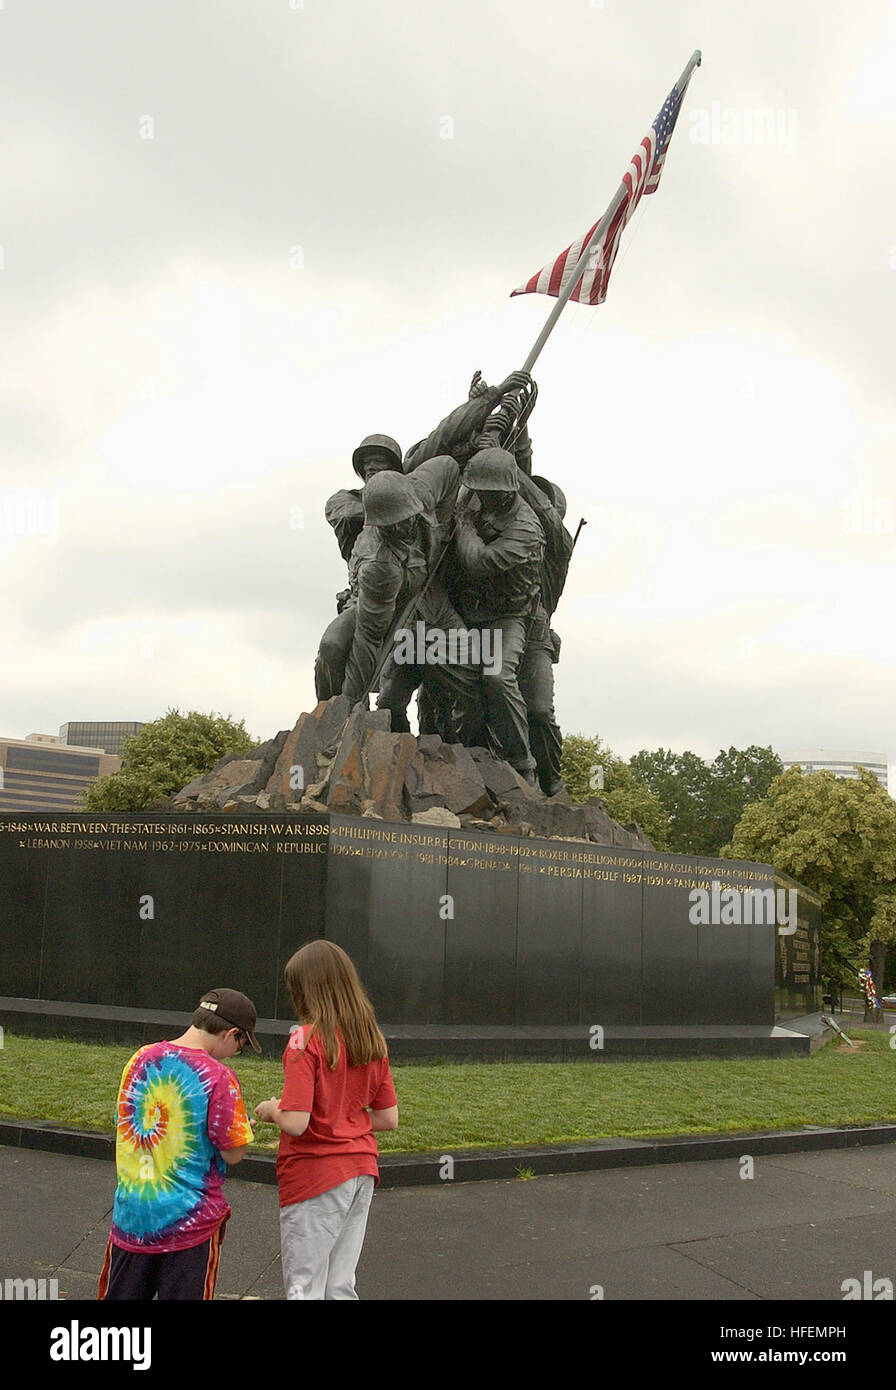 030617-N-9593R-088 Arlington, VA (17. Juni 2003)--The Marine Corps War Memorial steht als Symbol für diese dankbar Nation Wertschätzung für die geehrt tot des US Marine Corps.  Während die Statue eines der berühmtesten Ereignisse des zweiten Weltkriegs schildert, ist das Denkmal alle Marines gewidmet, die ihr Leben bei der Verteidigung der Vereinigten Staaten seit 1775 gegeben haben.  Der Sockel des Denkmals besteht aus grobem schwedischer Granit. In Gold auf dem Granit poliert sind die Namen und Daten von jedem wichtigsten Marinekorps-Engagement seit der Gründung des Corps, sowie die Inschrift: "In h Stockfoto